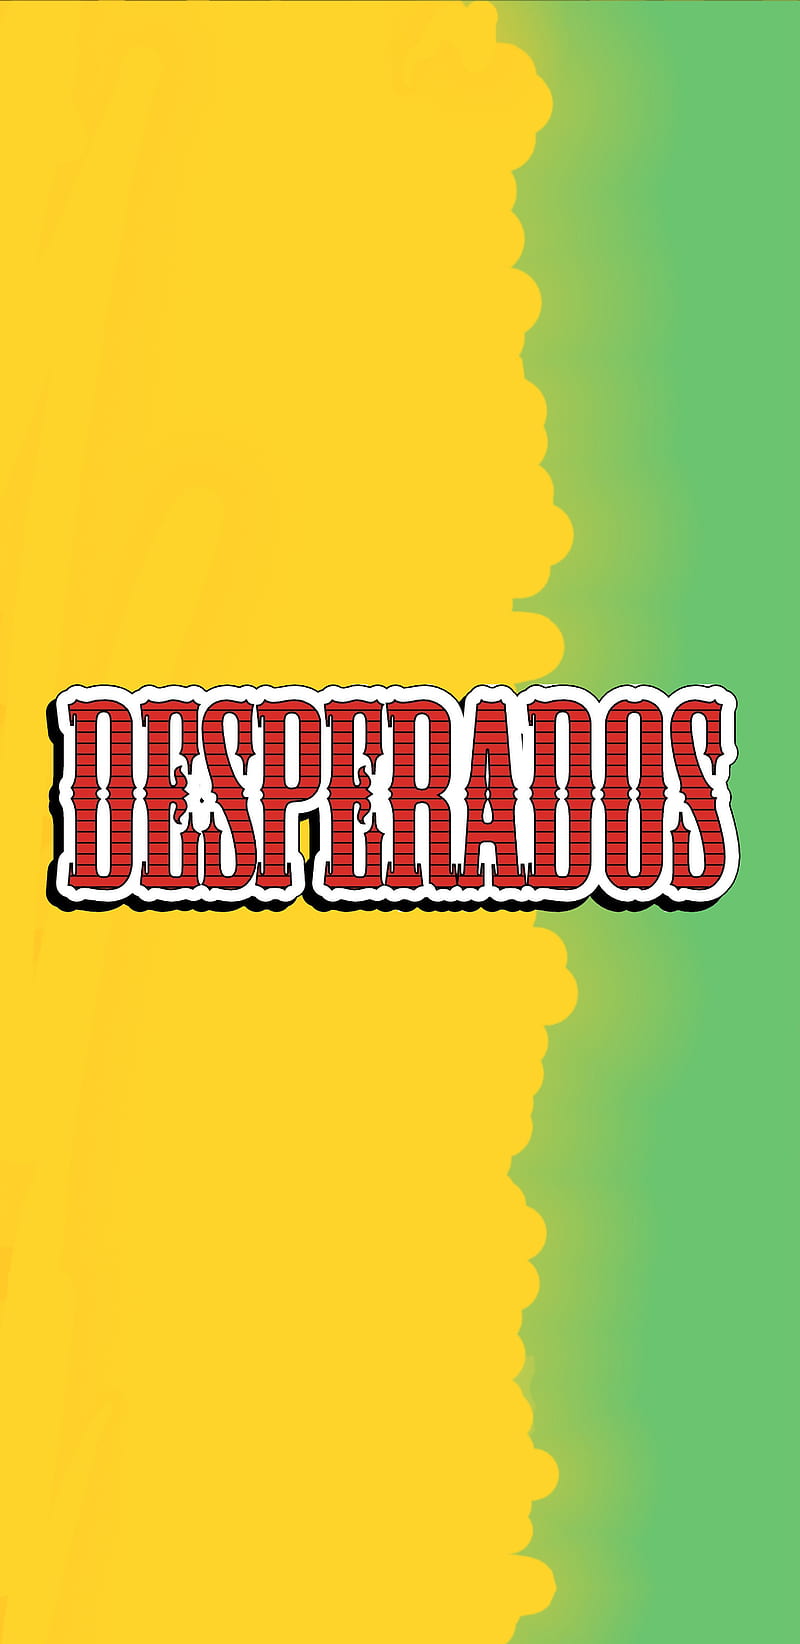 Desperados, beer, logo, mexico, tequila, HD phone wallpaper